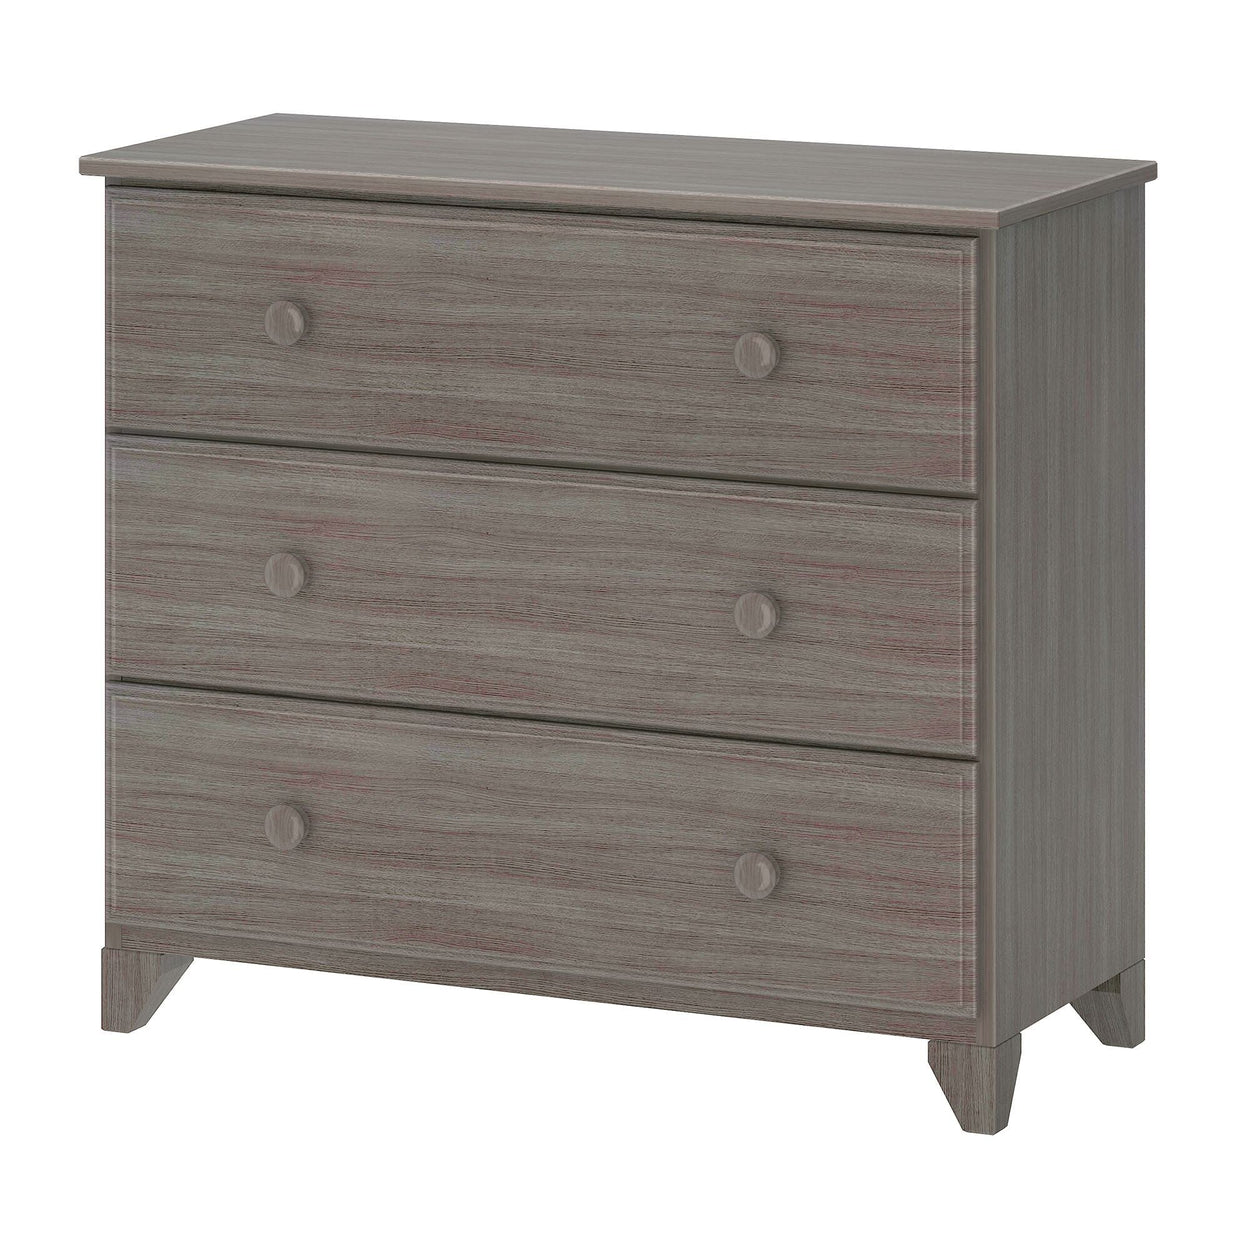 180013-151 : Furniture 3-Drawer Dresser, Clay